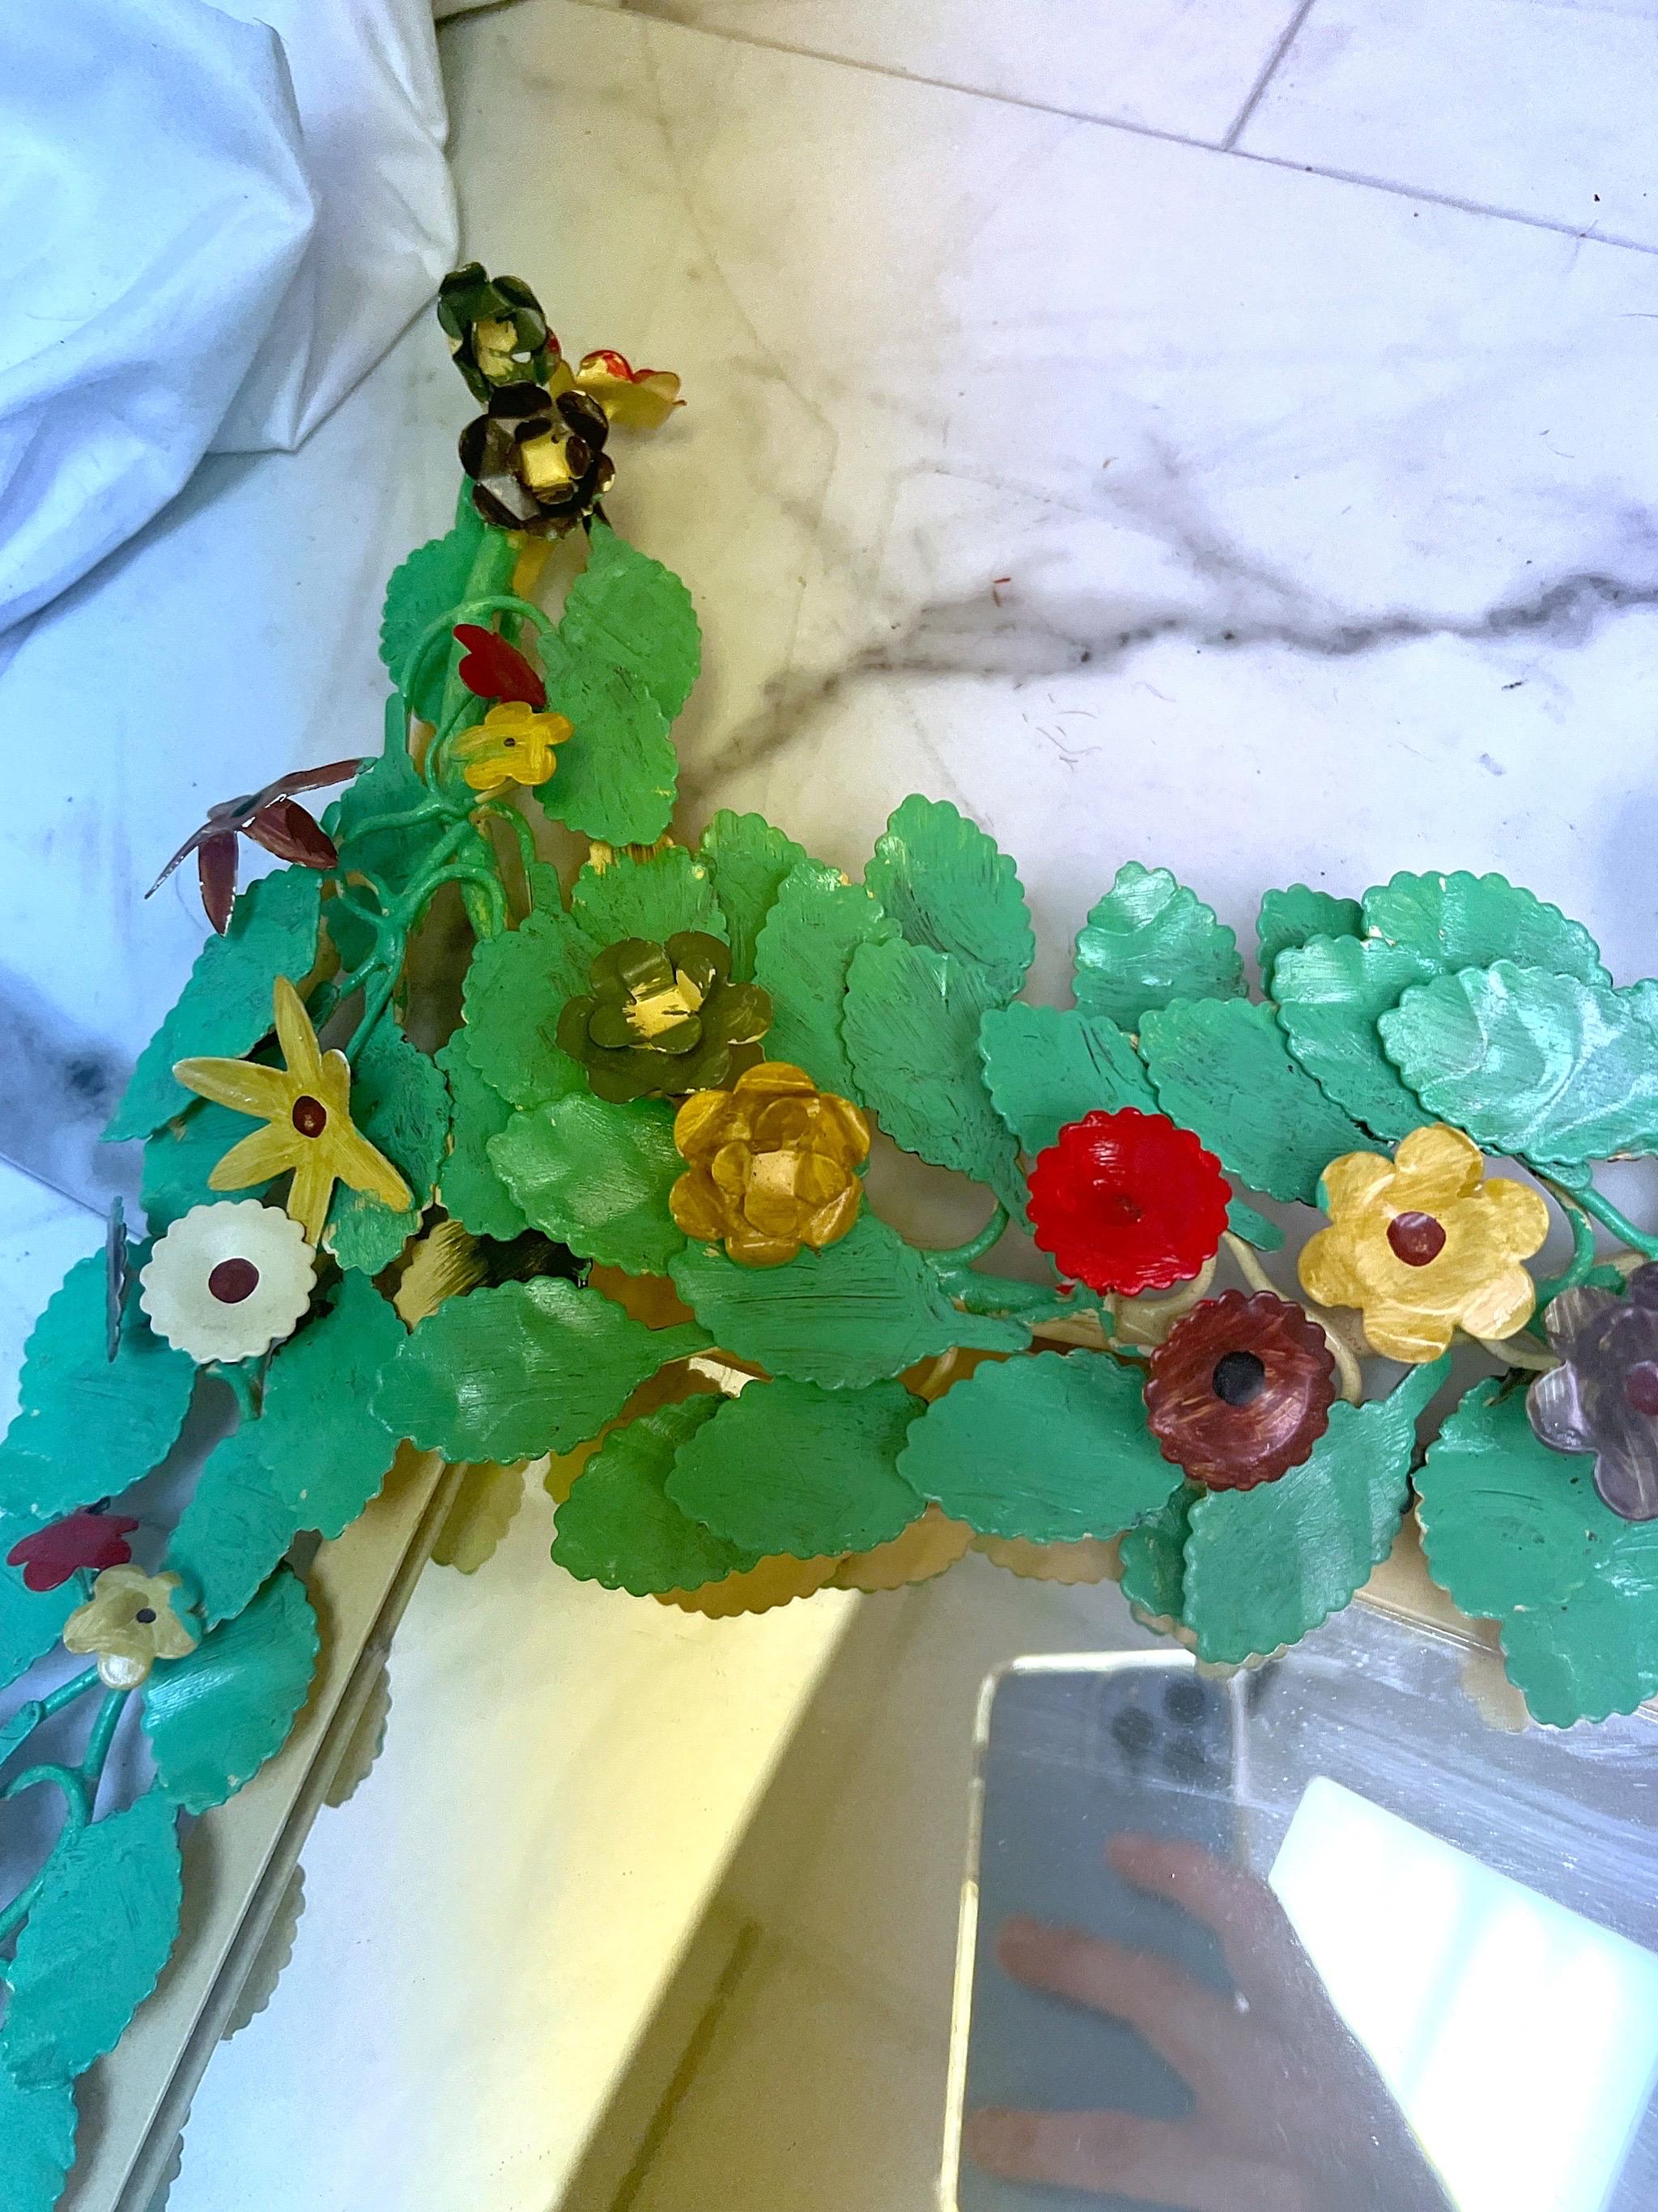 Grand miroir de style italien peint à la main et orné de motifs floraux.  Magnifique design floral en 3D avec des feuilles vertes brillantes et des fleurs rouges, violettes, vertes, blanches et bleues.  Le tout est complété par un arrière-plan